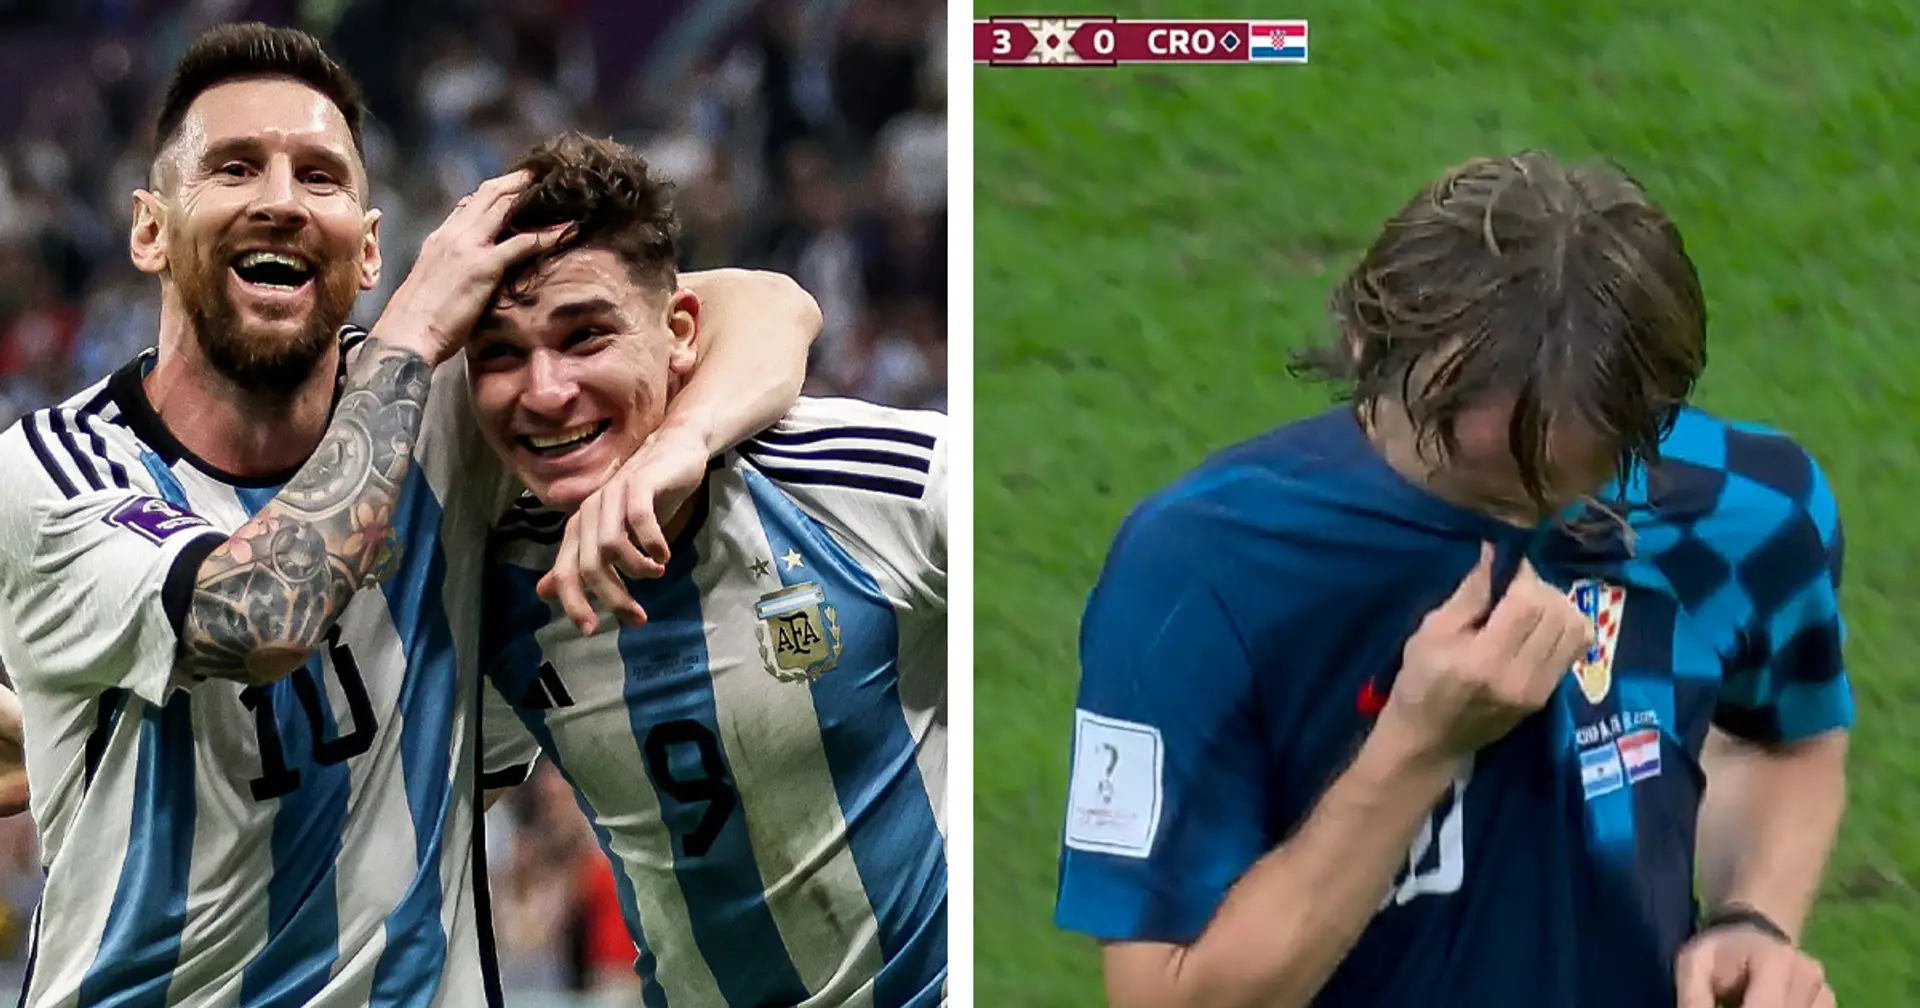 FLASH| L'Argentina vola in Finale battendo 3-0 la Croazia: Messi in versione 'alieno' incanta ancora